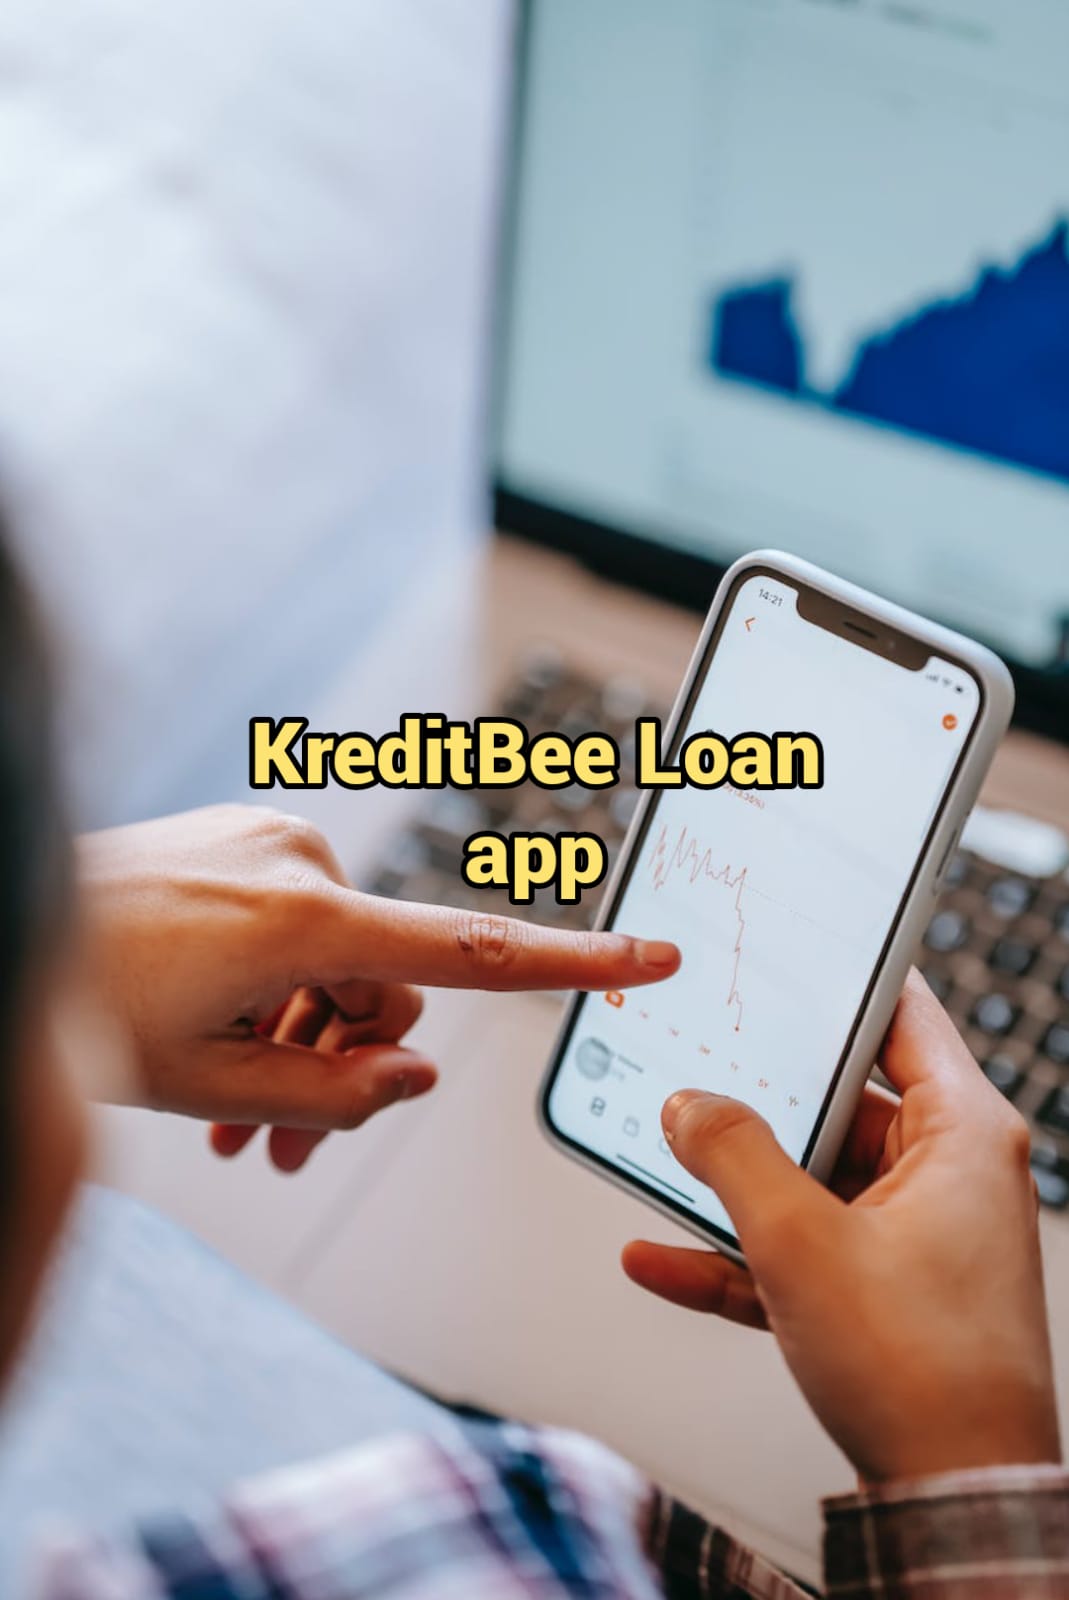 KreditBee Loan app